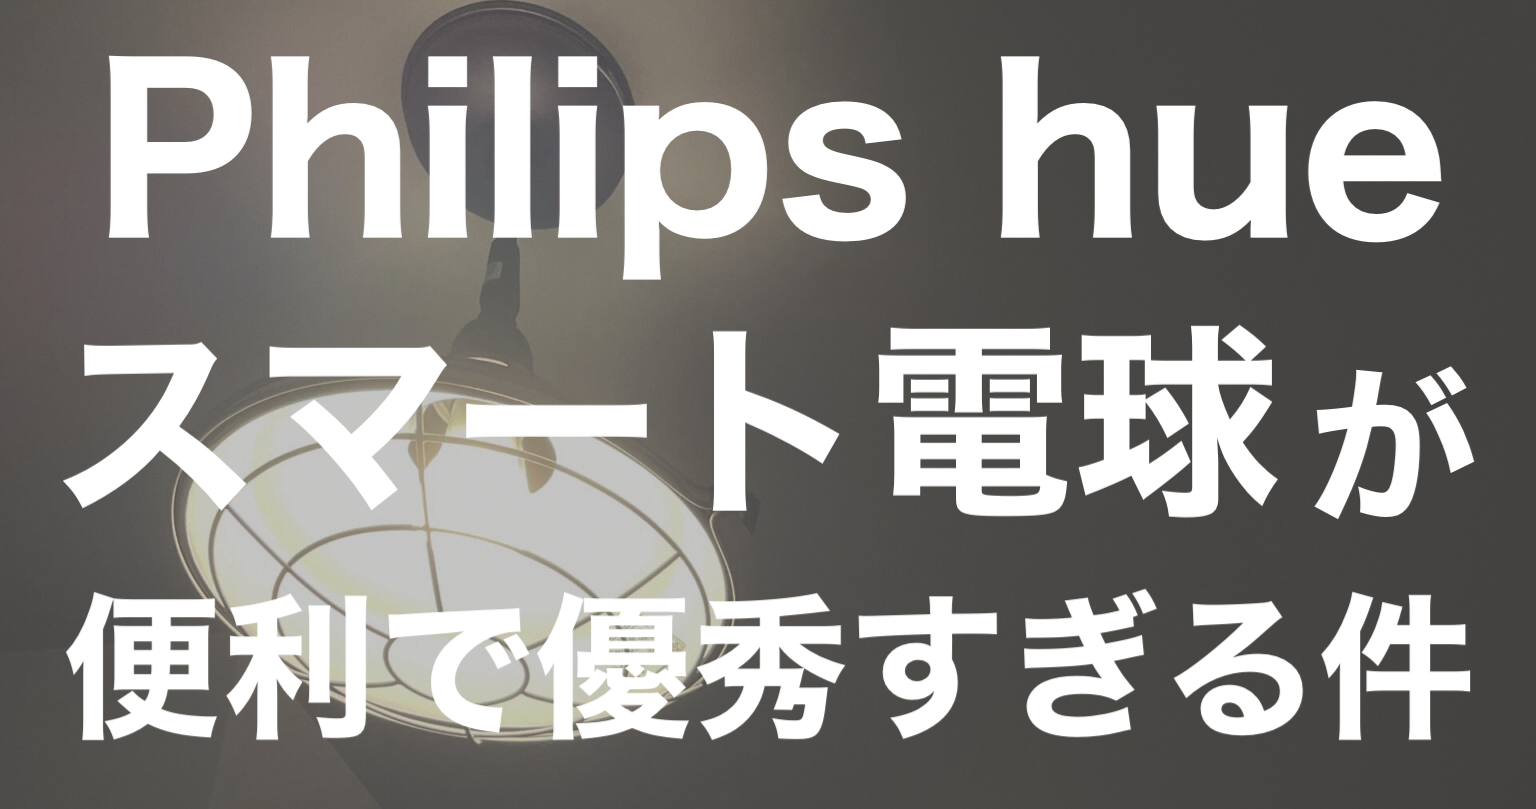 Philips hueのスマート電球が便利で優秀すぎる件 - サイトウ家のせいかつ